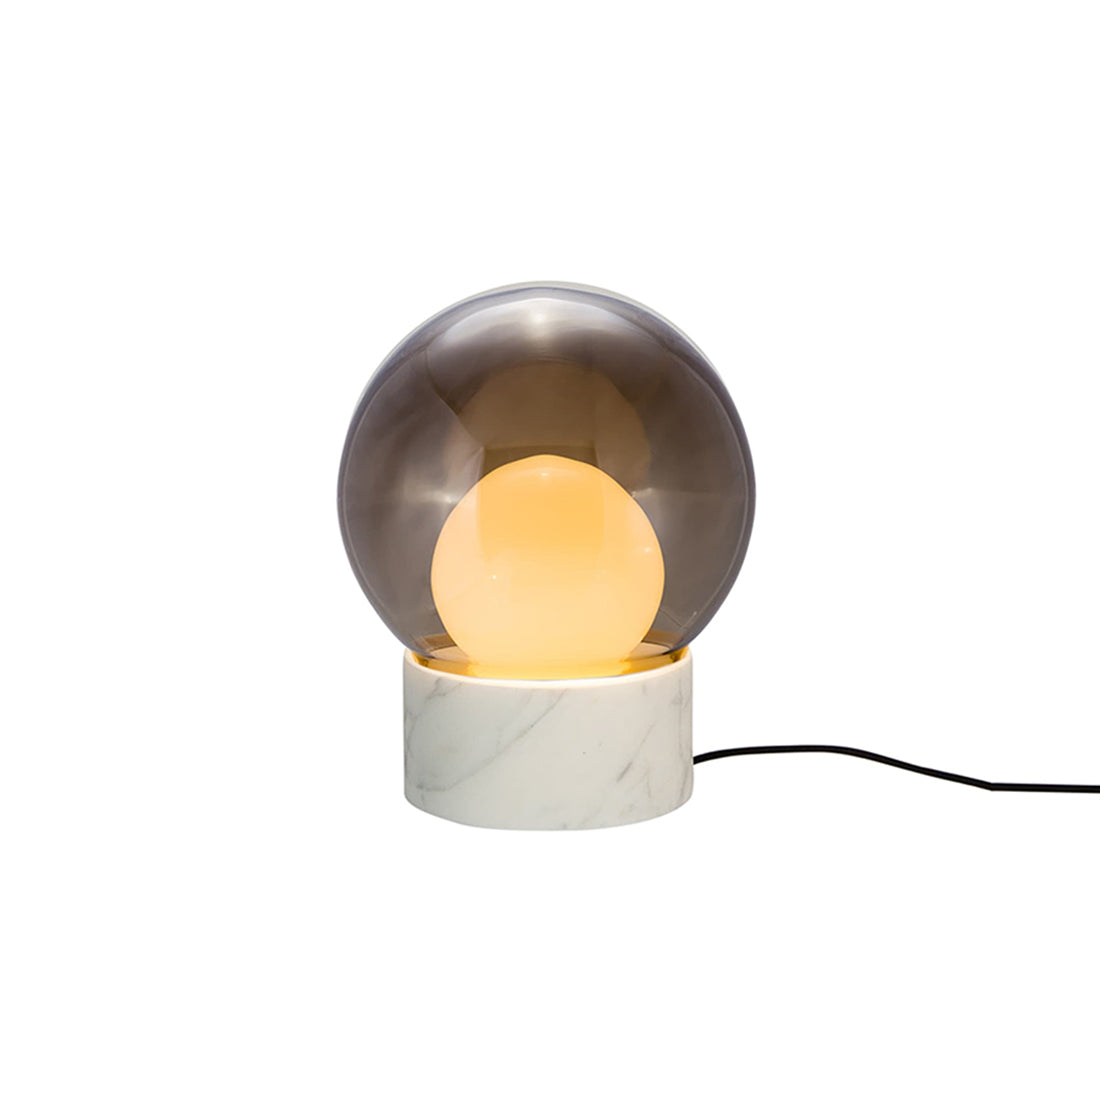 Boule Table Lamp: Smoke Gray + Opal White + Carrara White Stone